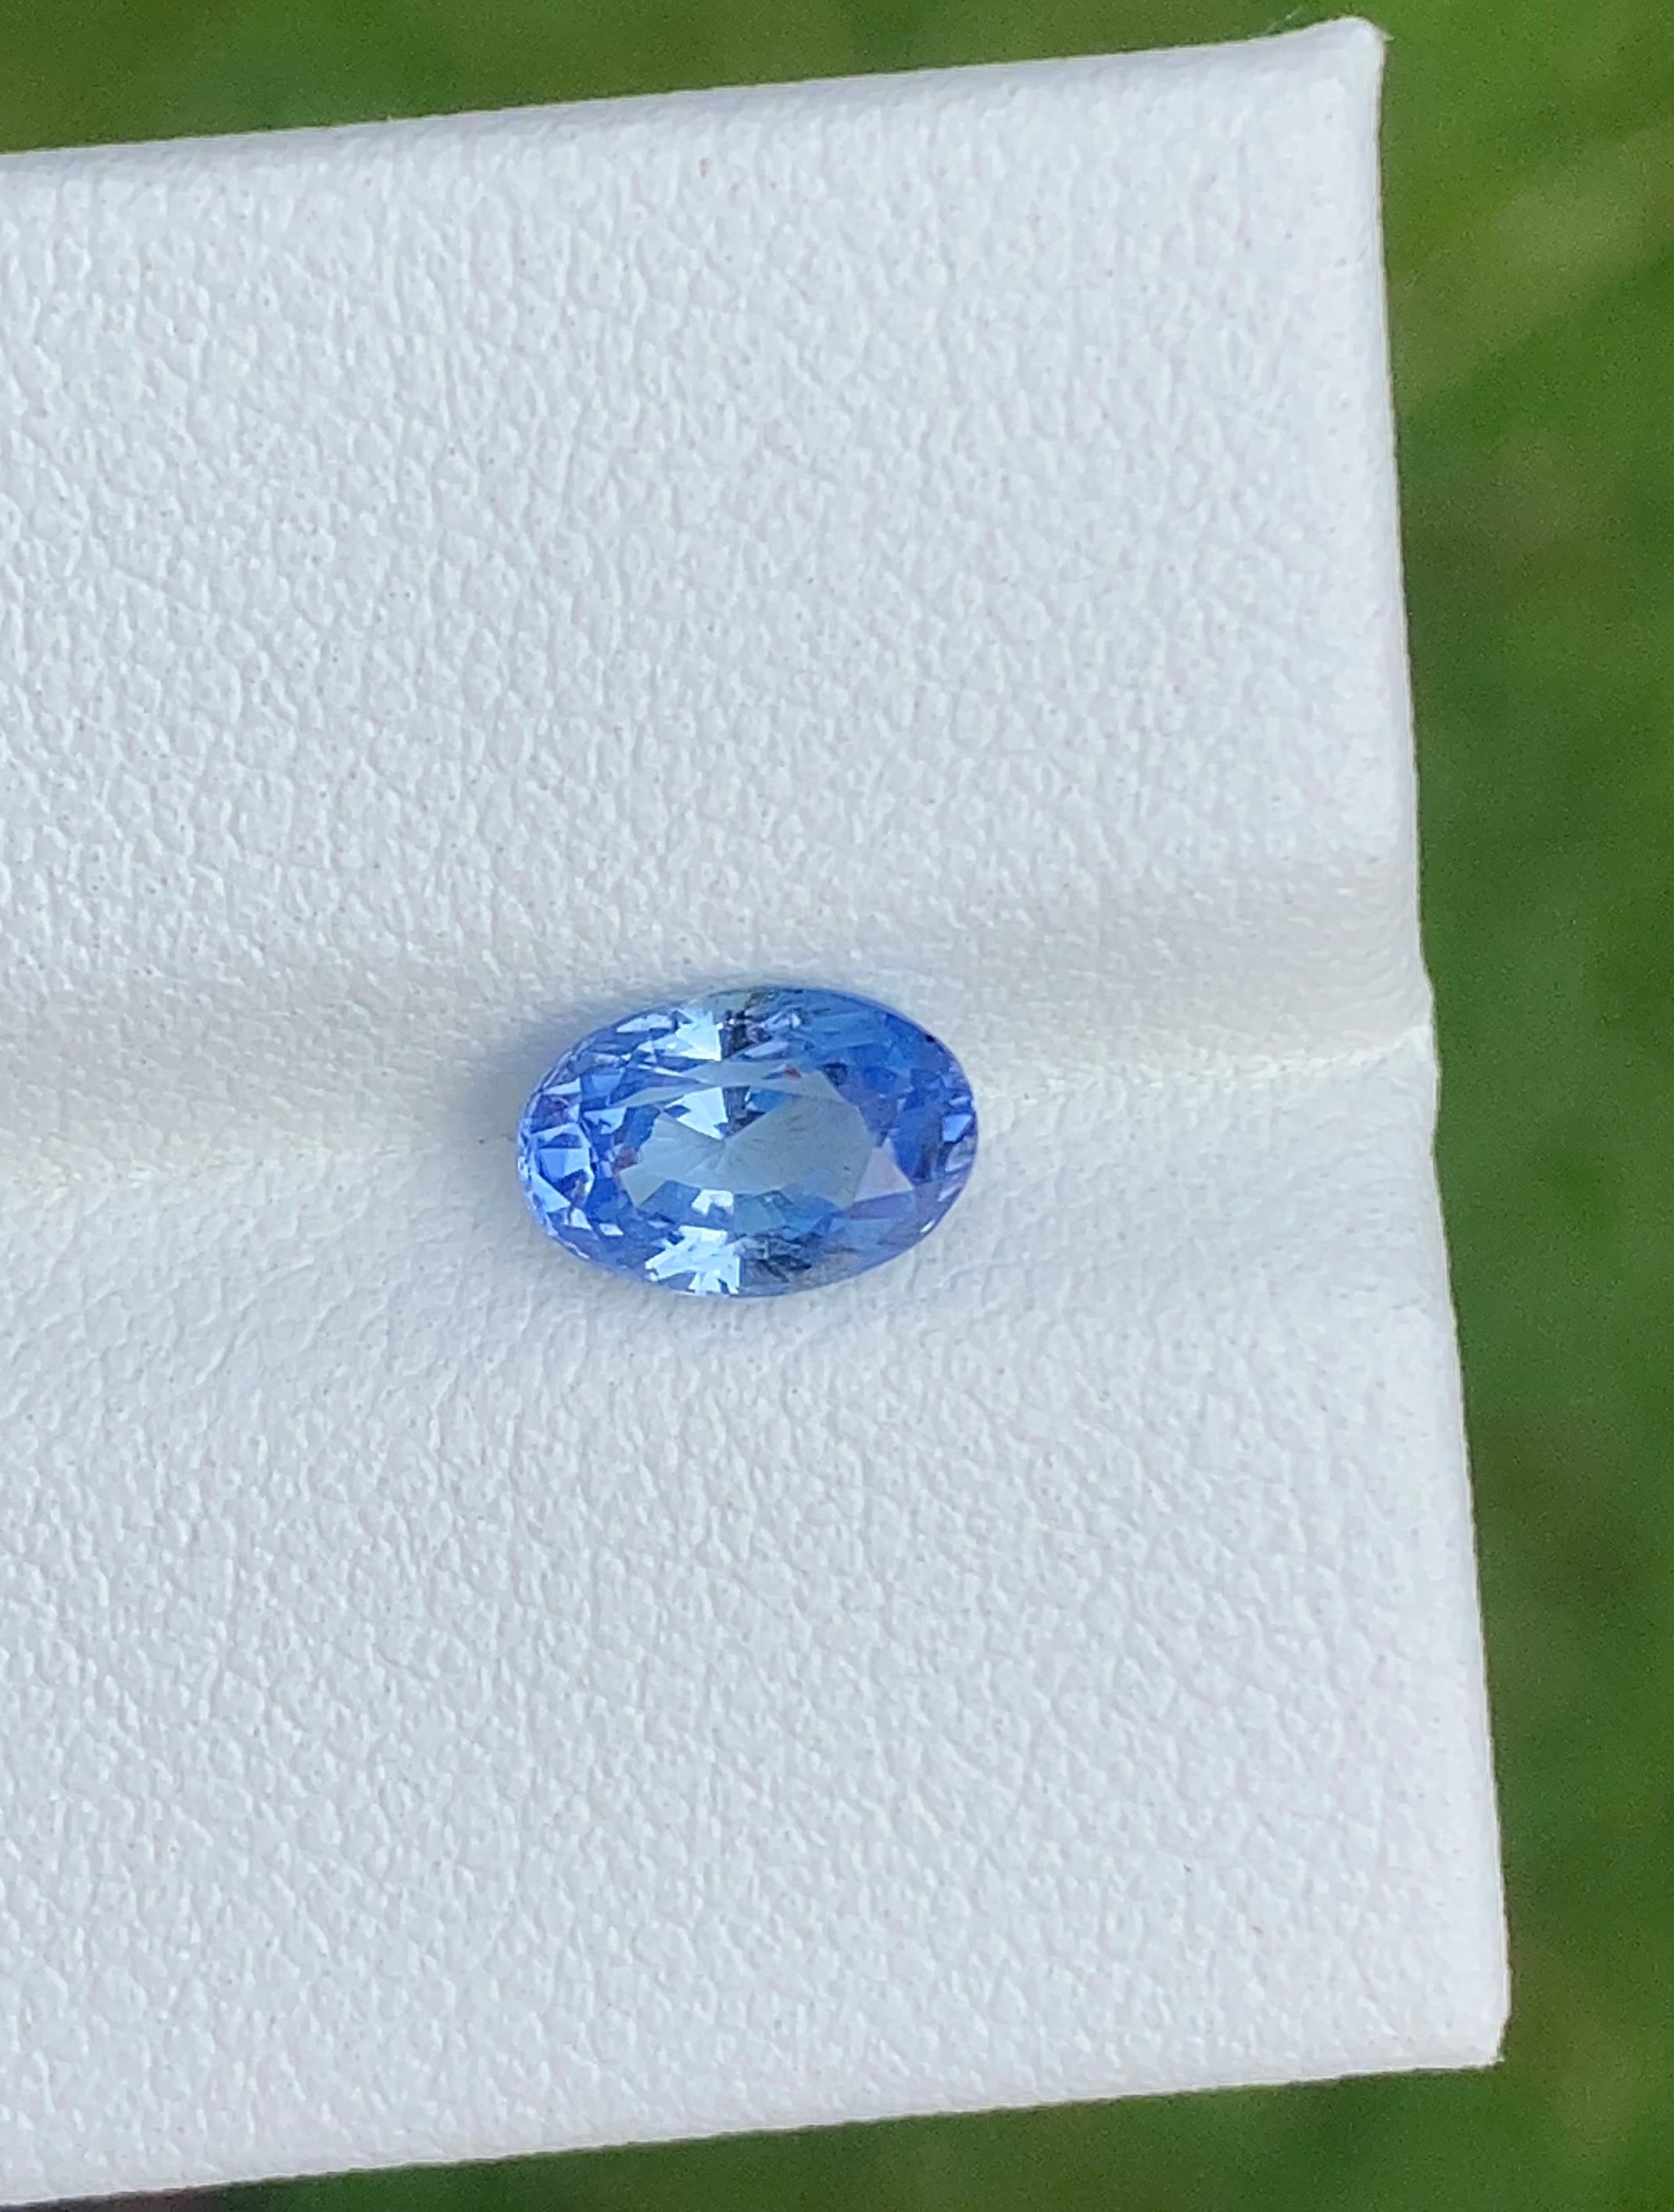 Unerhitzter blauer Ceylon-Saphir 1,25 Karat.

- • Sorte: Sapphire
- • Herkunft: Sri Lanka (Ceylon)
- • Farbe(n): Blau 
- • Form/Schliffart: Oval
- • Abmessungen: 8,3 mm x 6,1 mm x 5,2 mm
- • Kalibriert: Nein
- • Reinheitsgrad: vVS1
- • Behandlung: